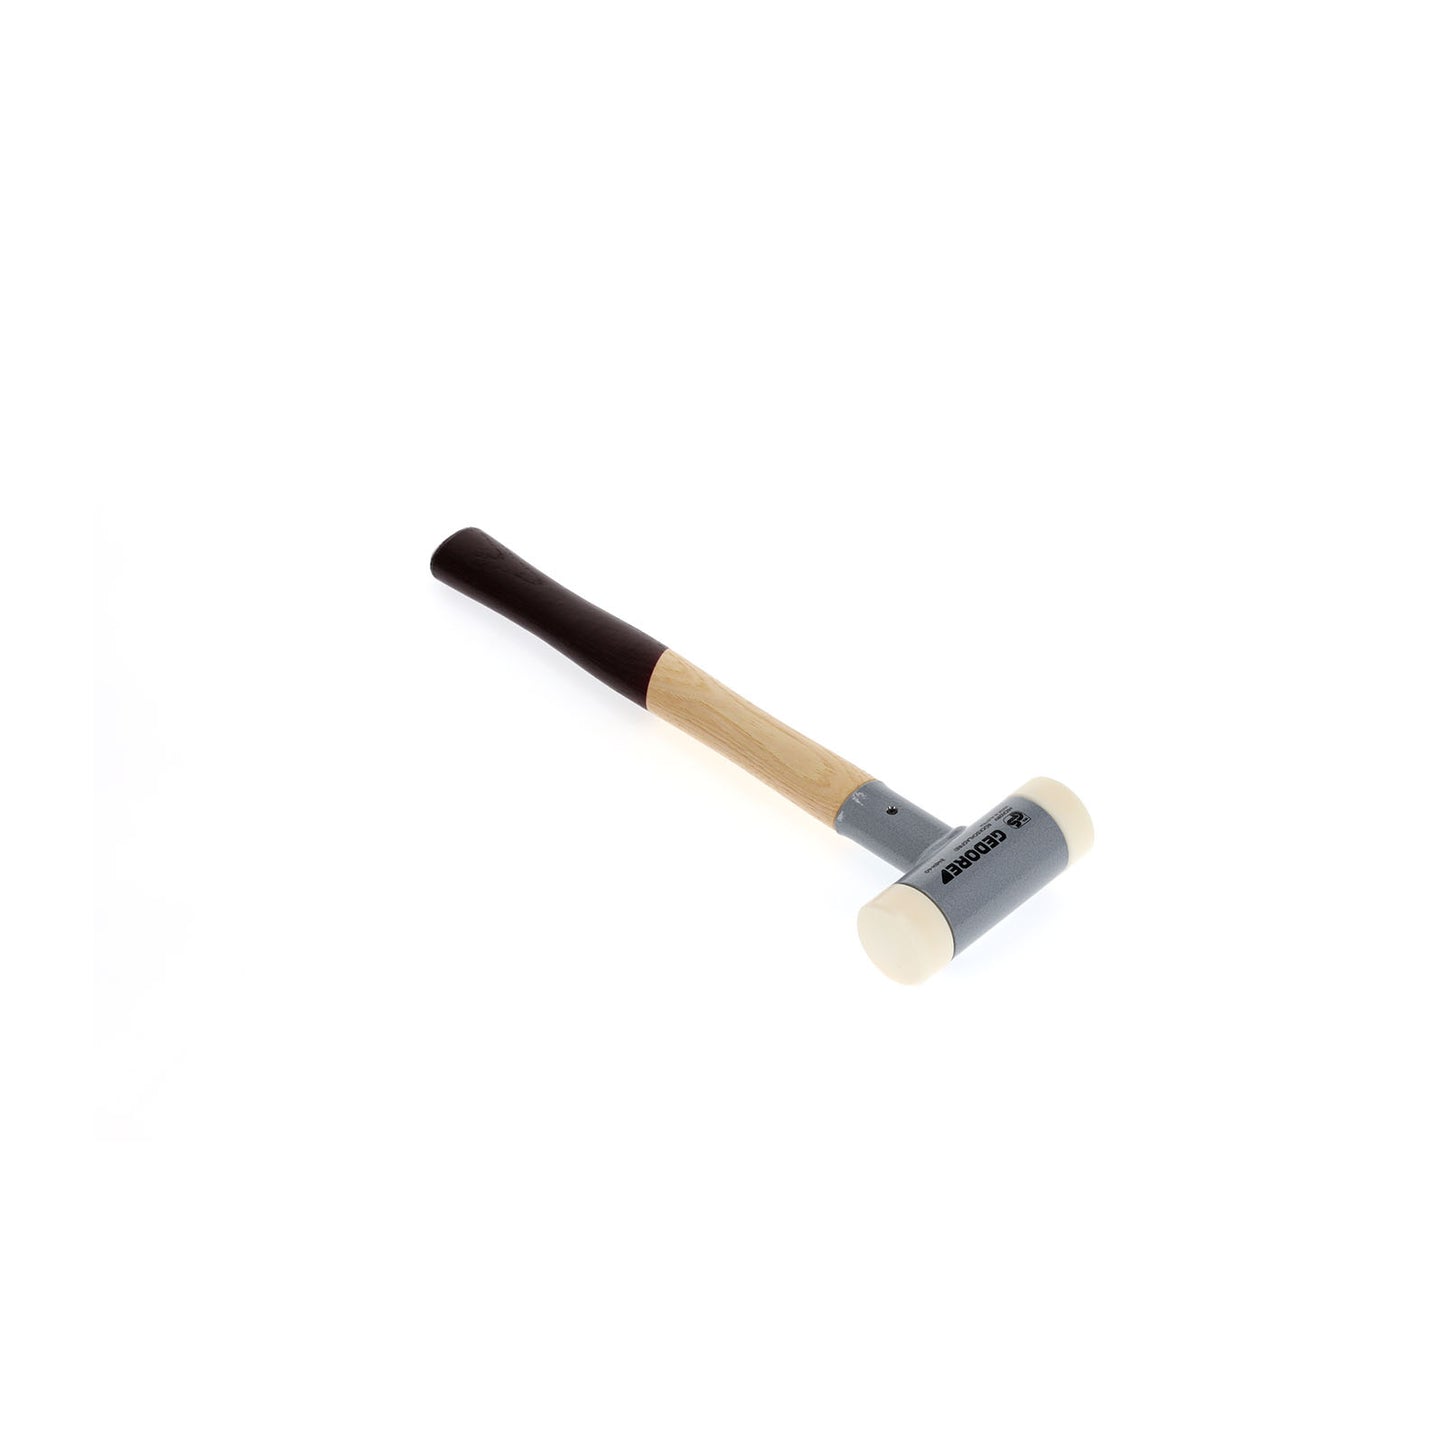 GEDORE 248 H-40 - Anti-rebound hammer d 40 mm (8868580)